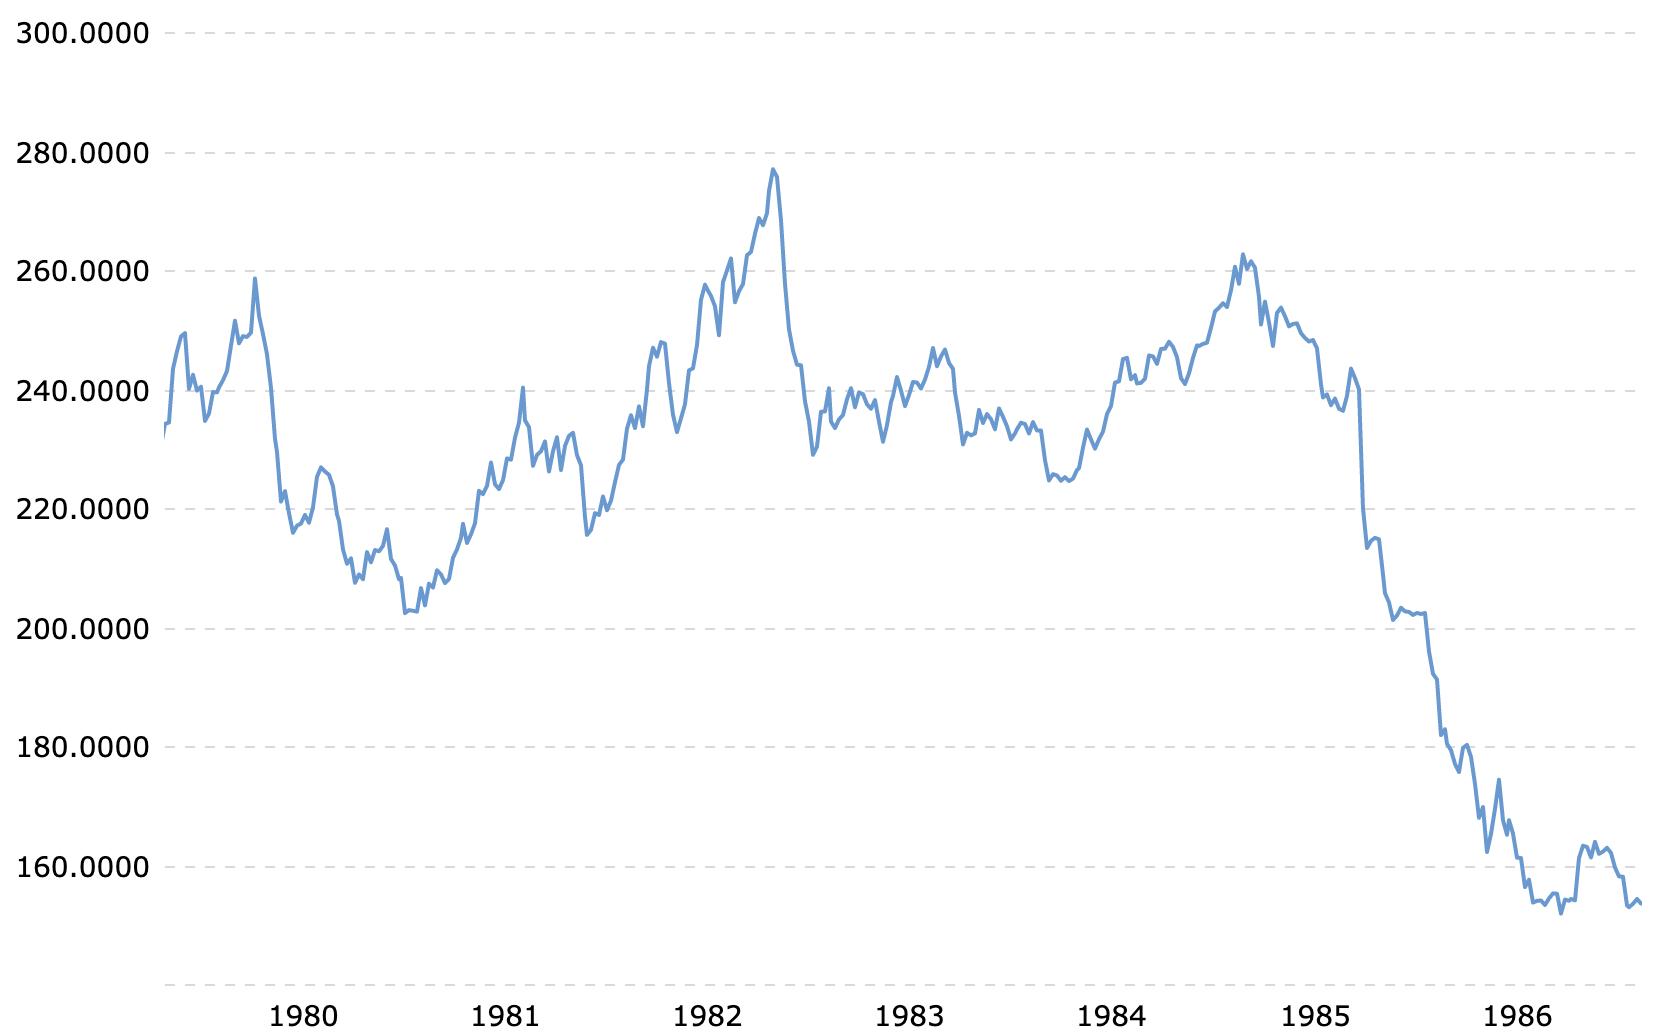 Výrazné oslabení JPY na páru s USD v polovině 80. let. Zdroj: Macrotrends